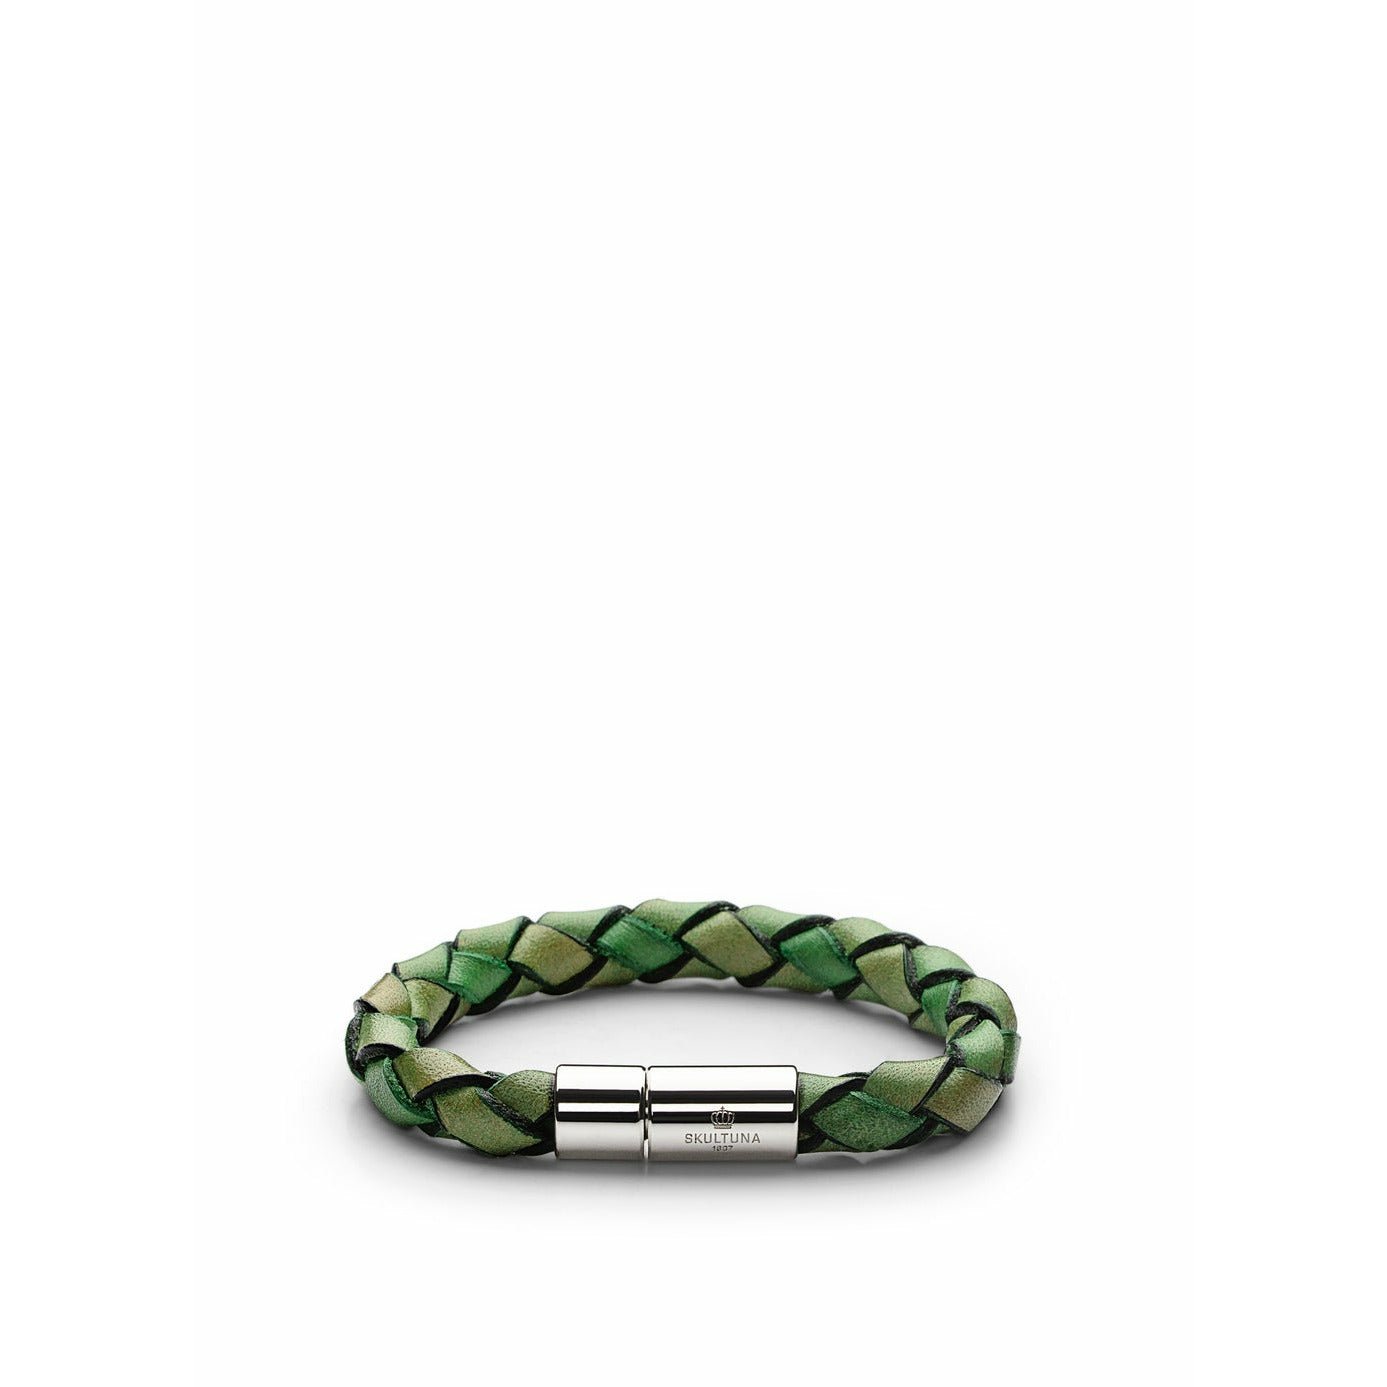 Skultuna Lino ieluzzi armbånd stort Ø18,5 cm, lysegrøn